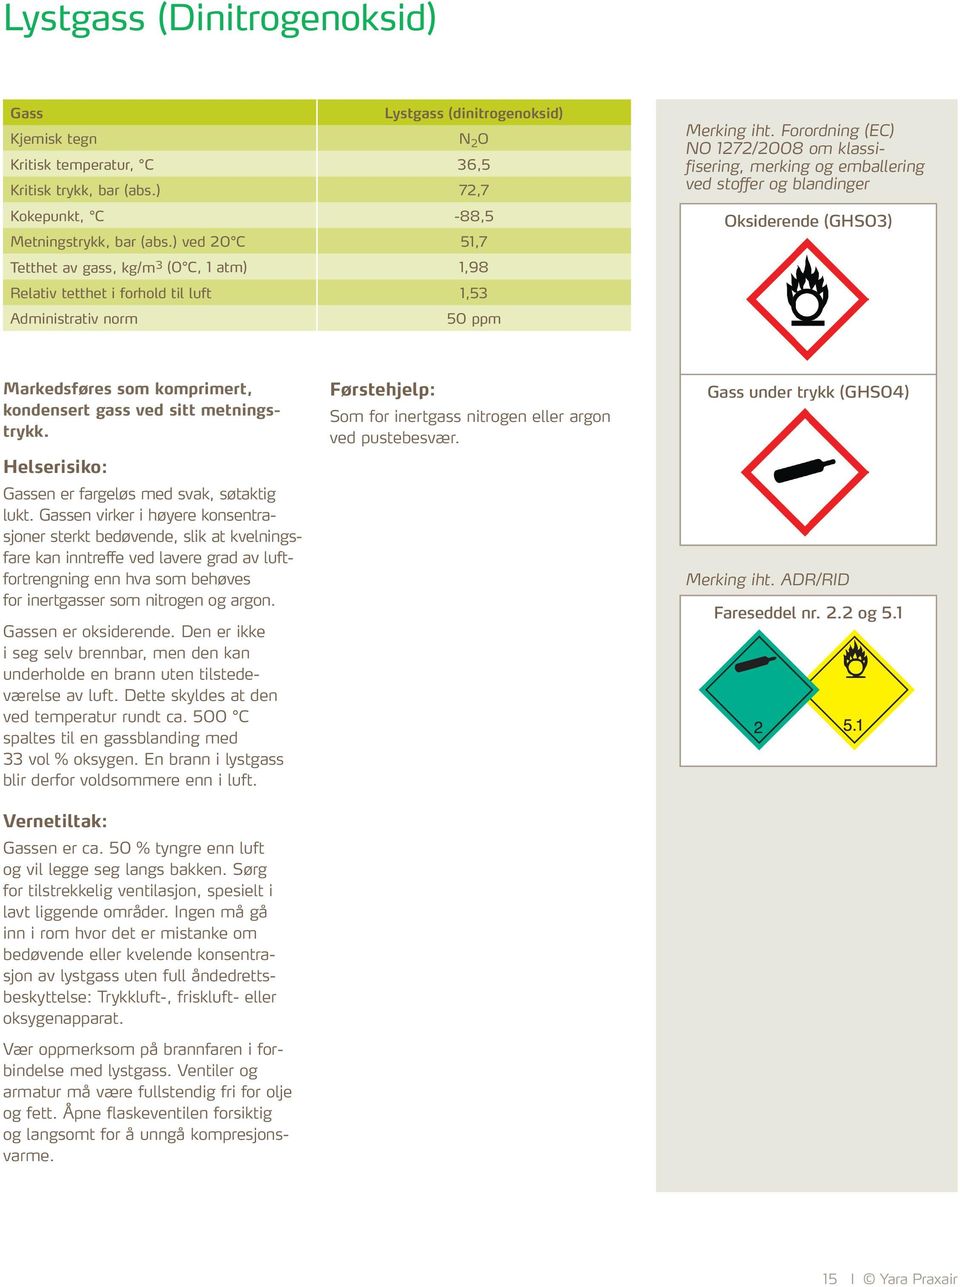 Forordning (EC) NO 1272/2008 om klassifisering, merking og emballering ved stoffer og blandinger Oksiderende (GHS03) Markedsføres som komprimert gass og som kondensert, dypkjølt gass.